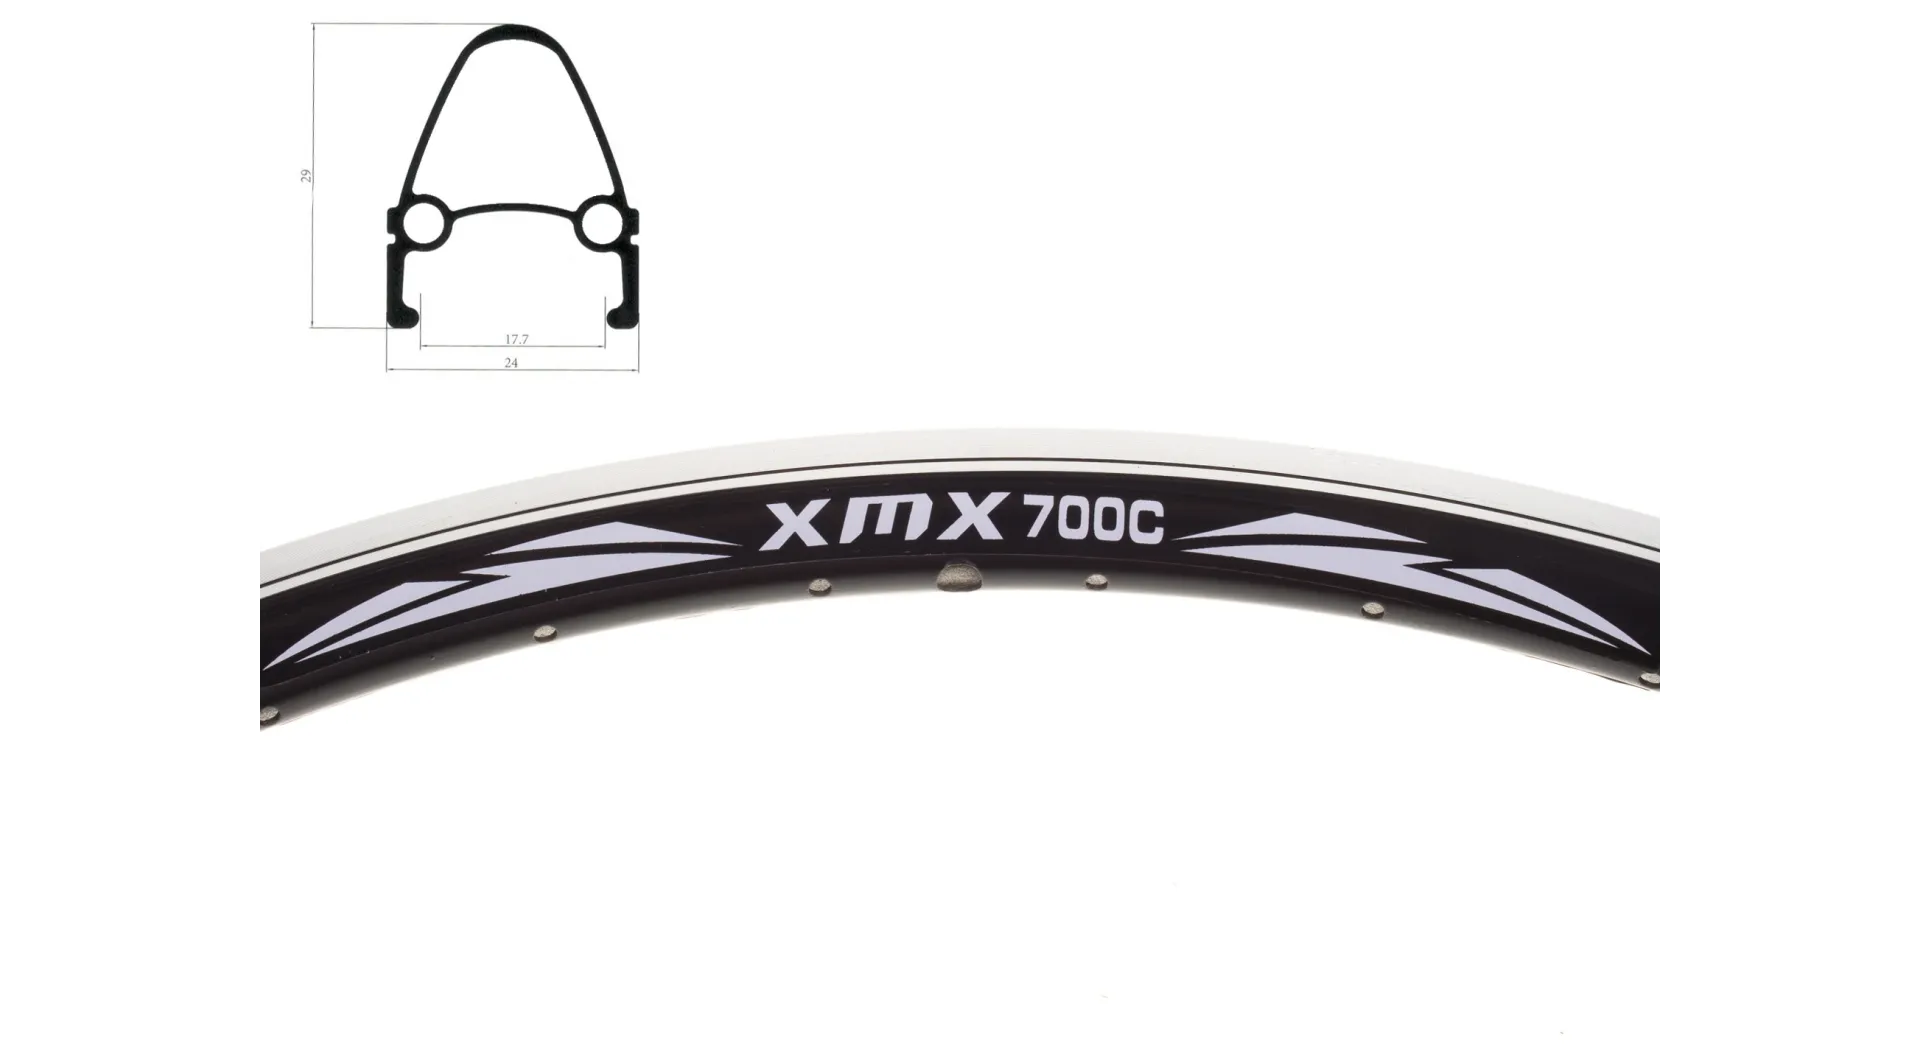 Obręcz 28" stożkowa XMX Aluminiowa czarna CNC